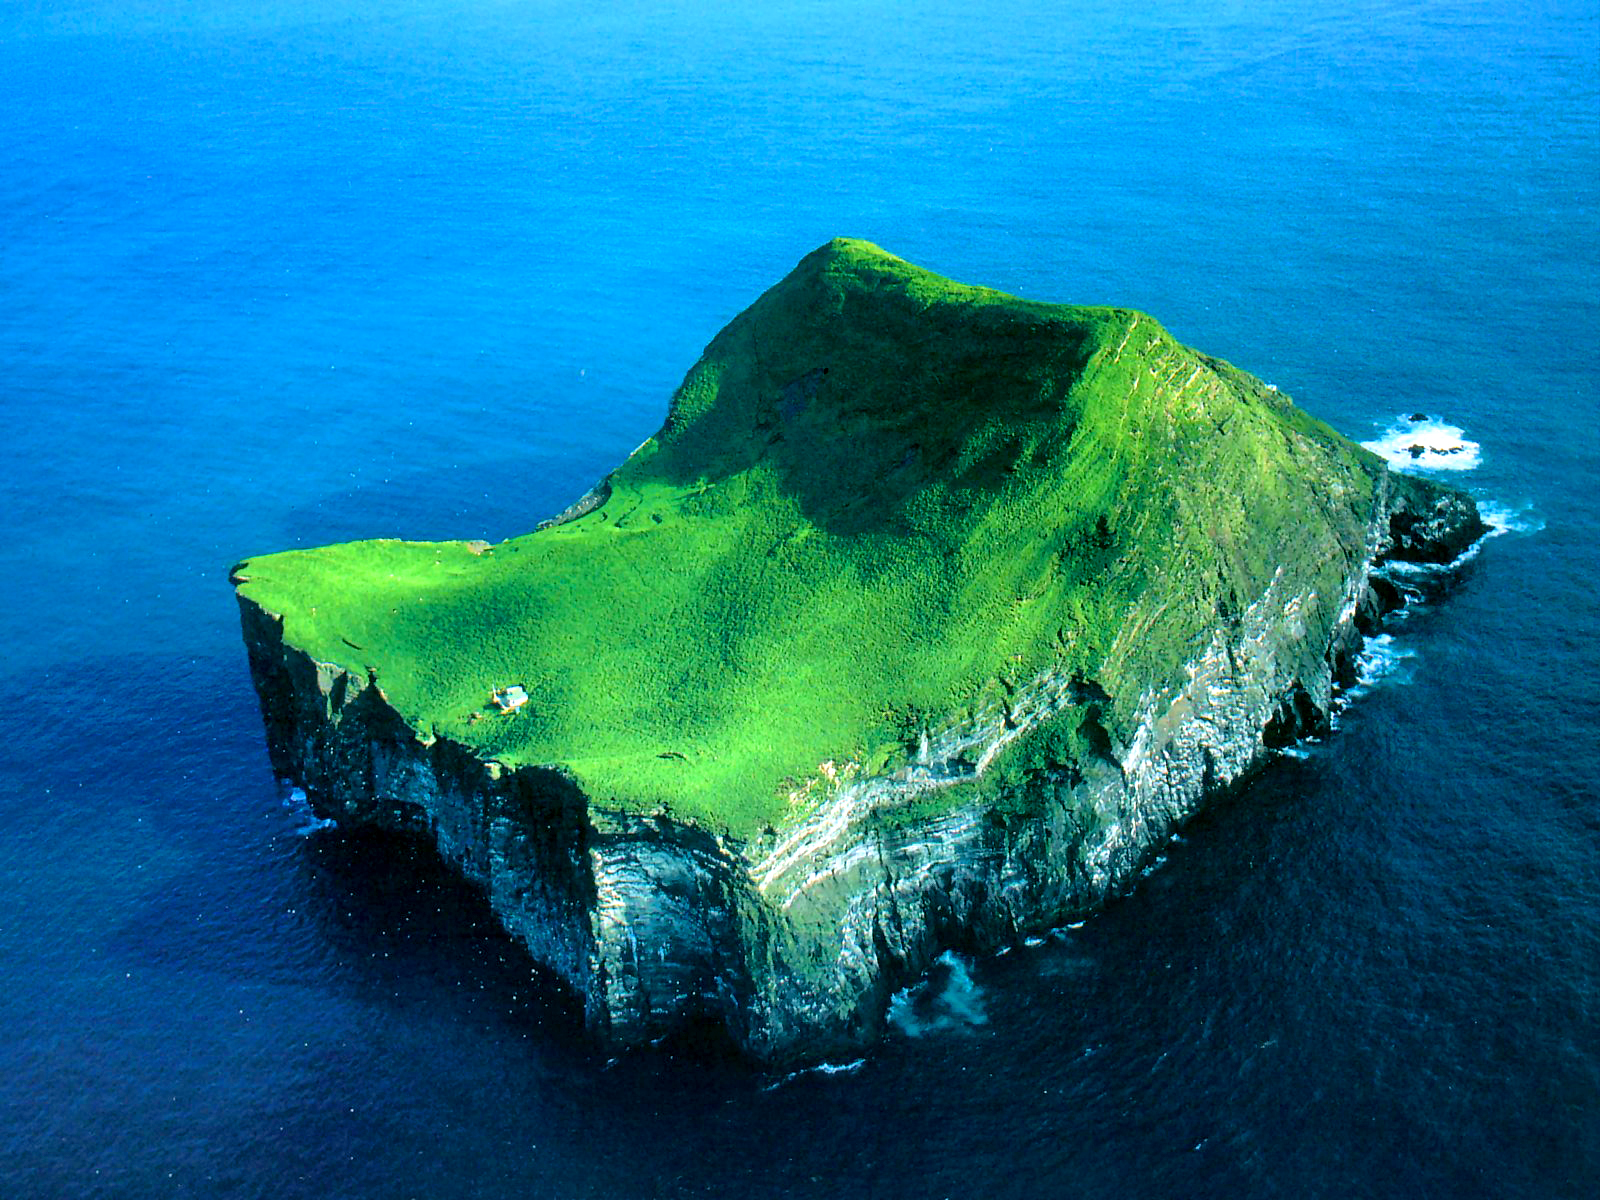 Island место. Остров Эллидей, Исландия. Одинокий дом на острове Эллидаэй Исландия. Остров Эдлидаэй в Исландии. Самый одинокий дом в мире- остров Эллидаэй, Исландия 🇮🇸.